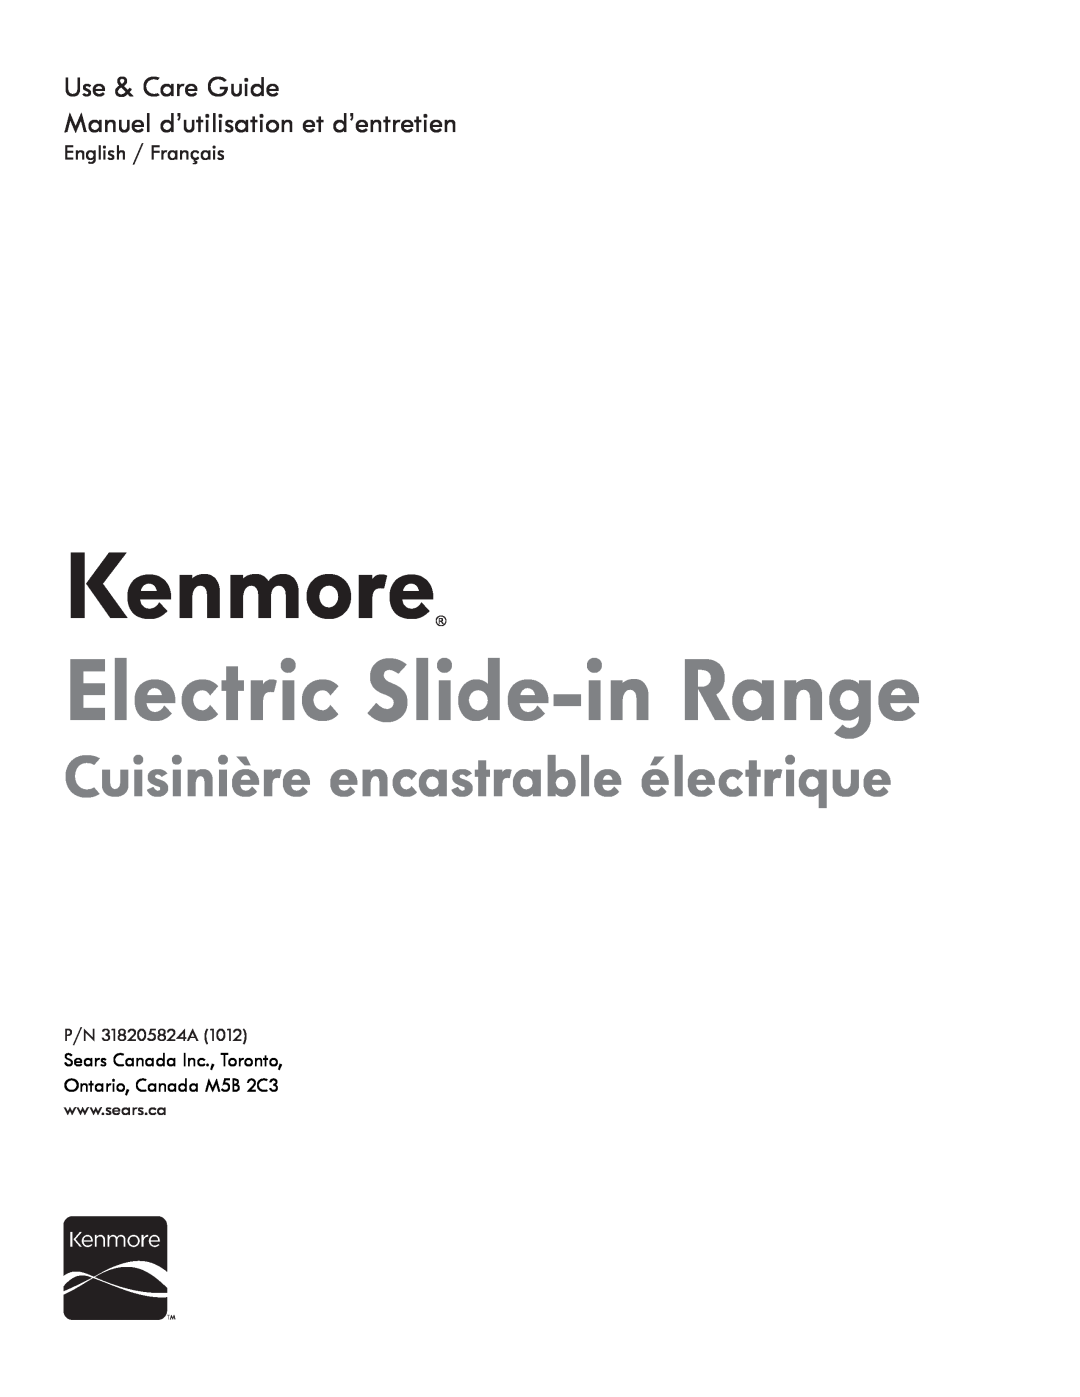 Kenmore PN 318205824A -1012 manuel dutilisation Kenmore, Electric Slide-inRange, Cuisinière encastrable électrique 